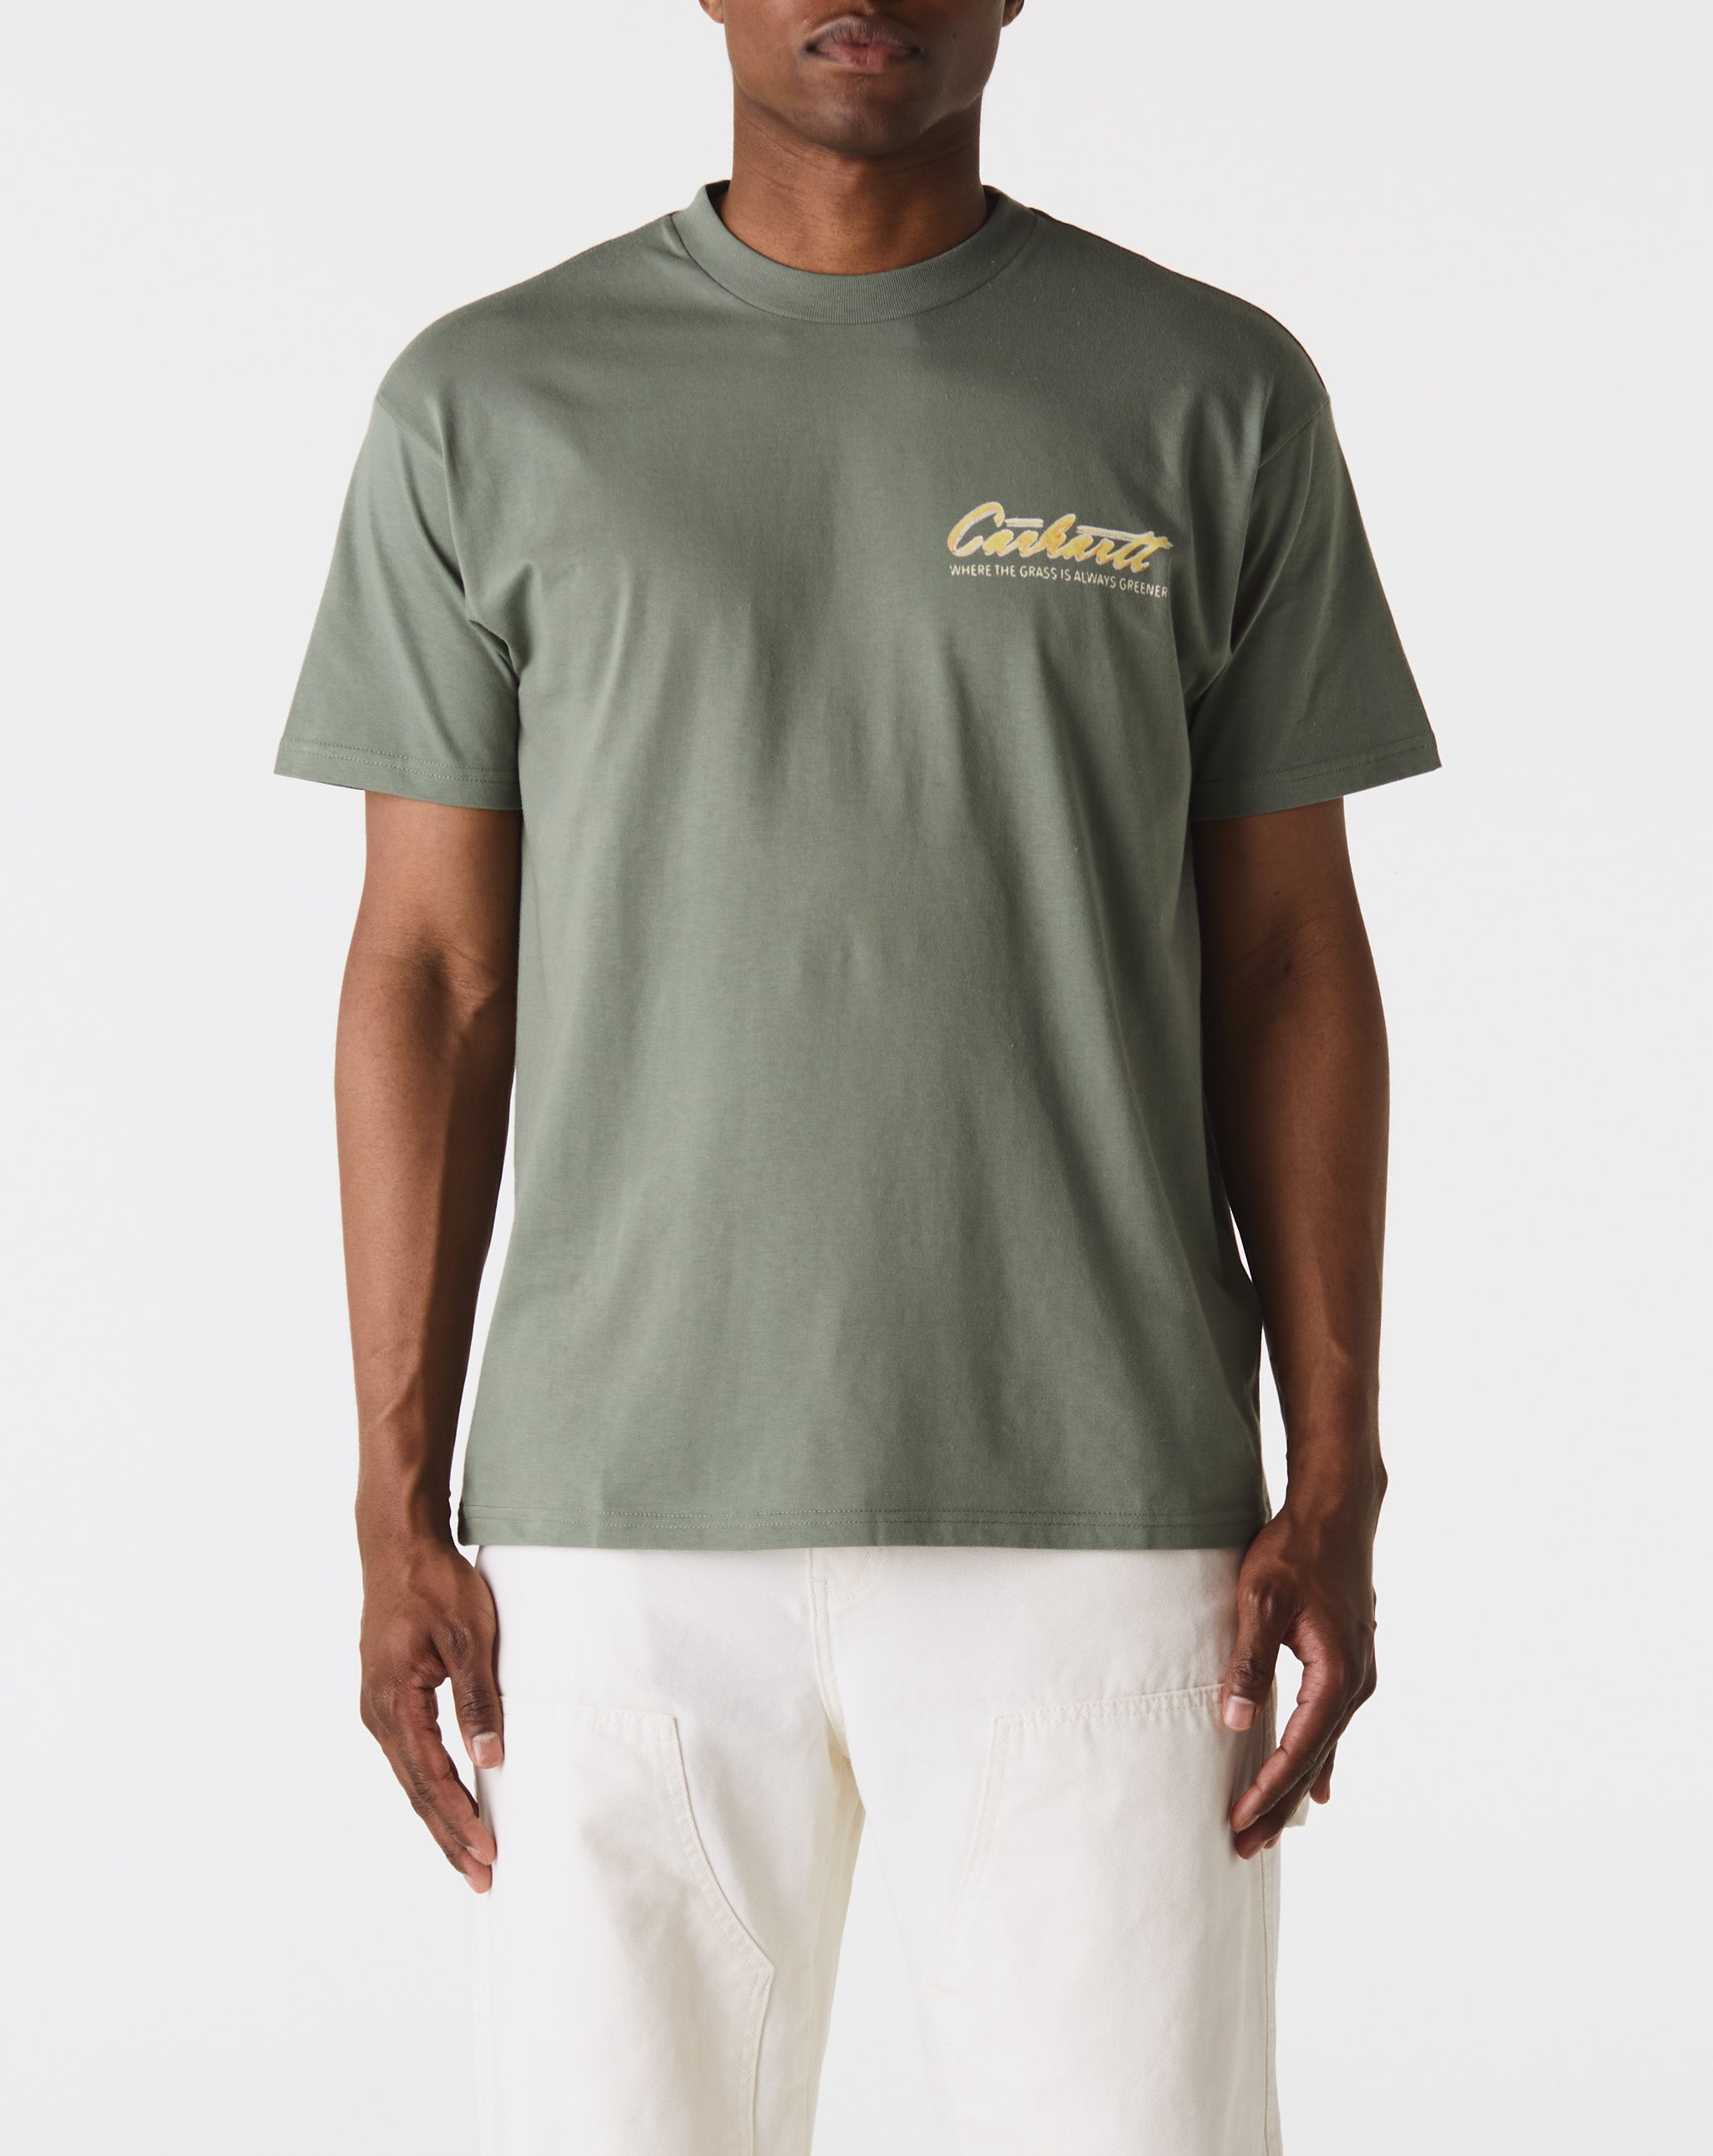 Carhartt WIP Green Grass T-Shirt  - XHIBITION